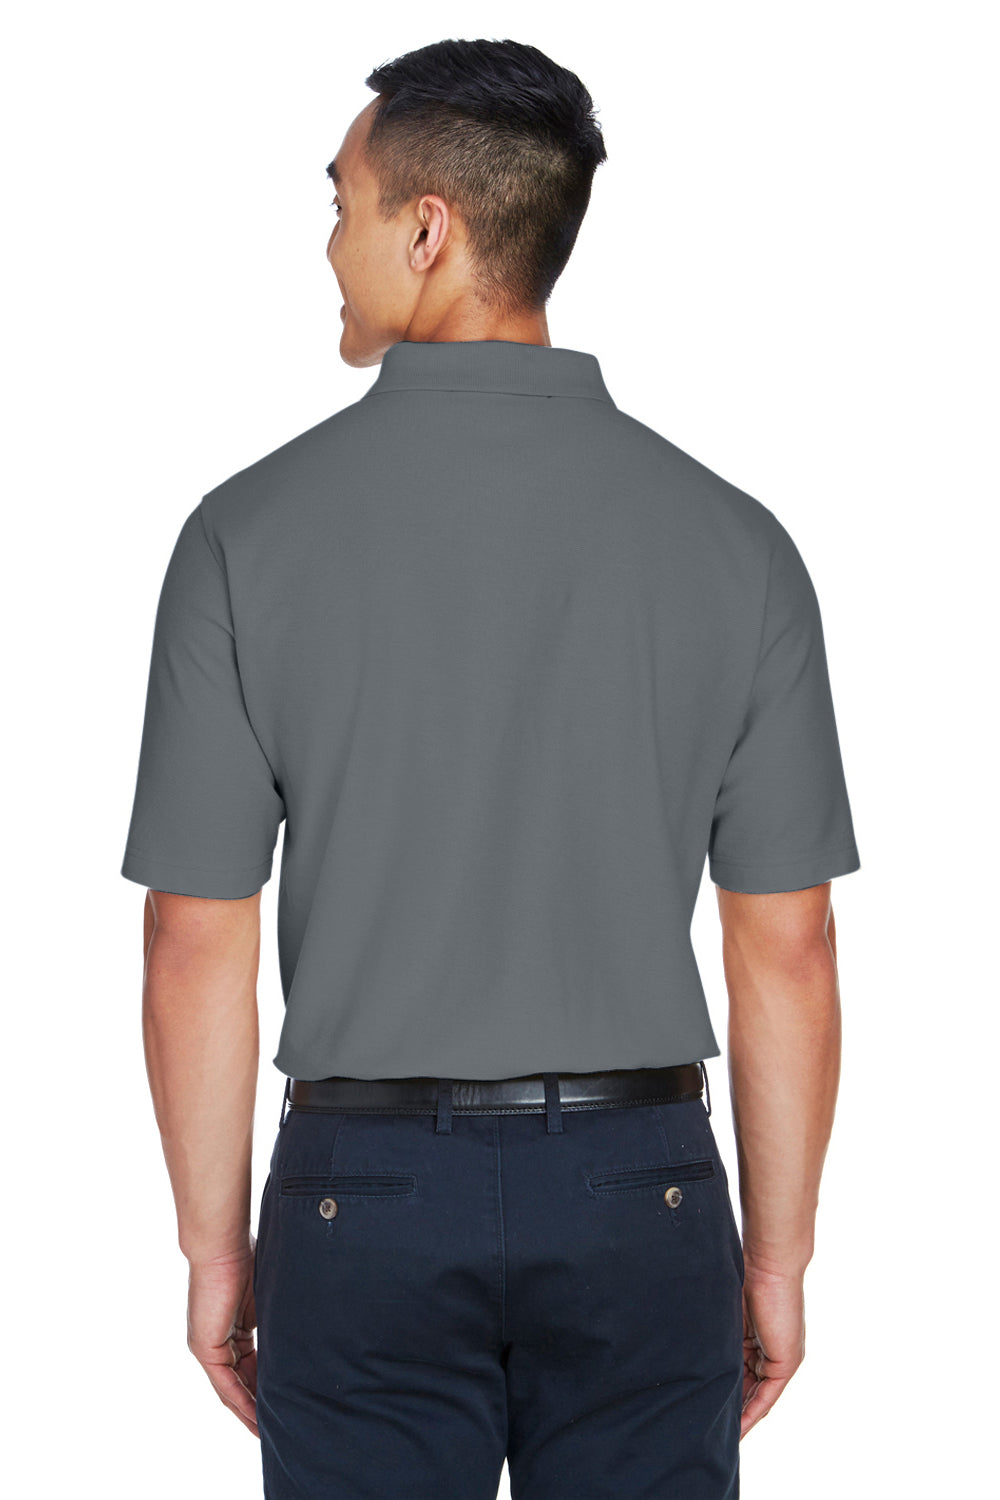 Devon & Jones DG150 Mens DryTec20 Performance Moisture Wicking Short Sleeve Polo Shirt Graphite Grey Back